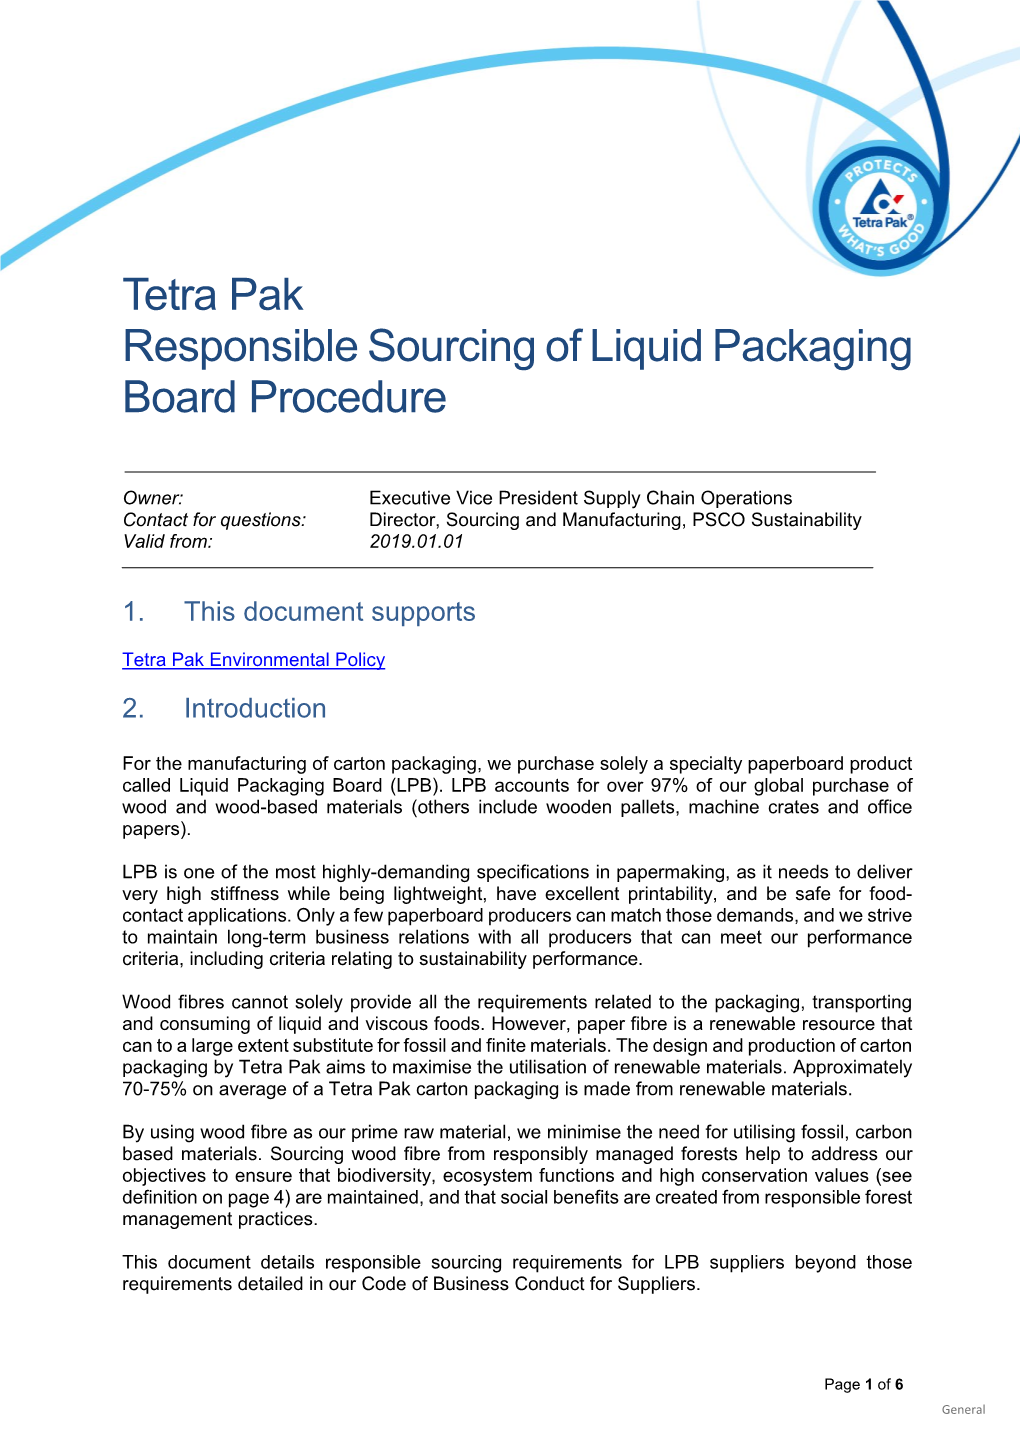 Tetra Pak Responsible Sourcing of Liquid Packaging Board Procedure